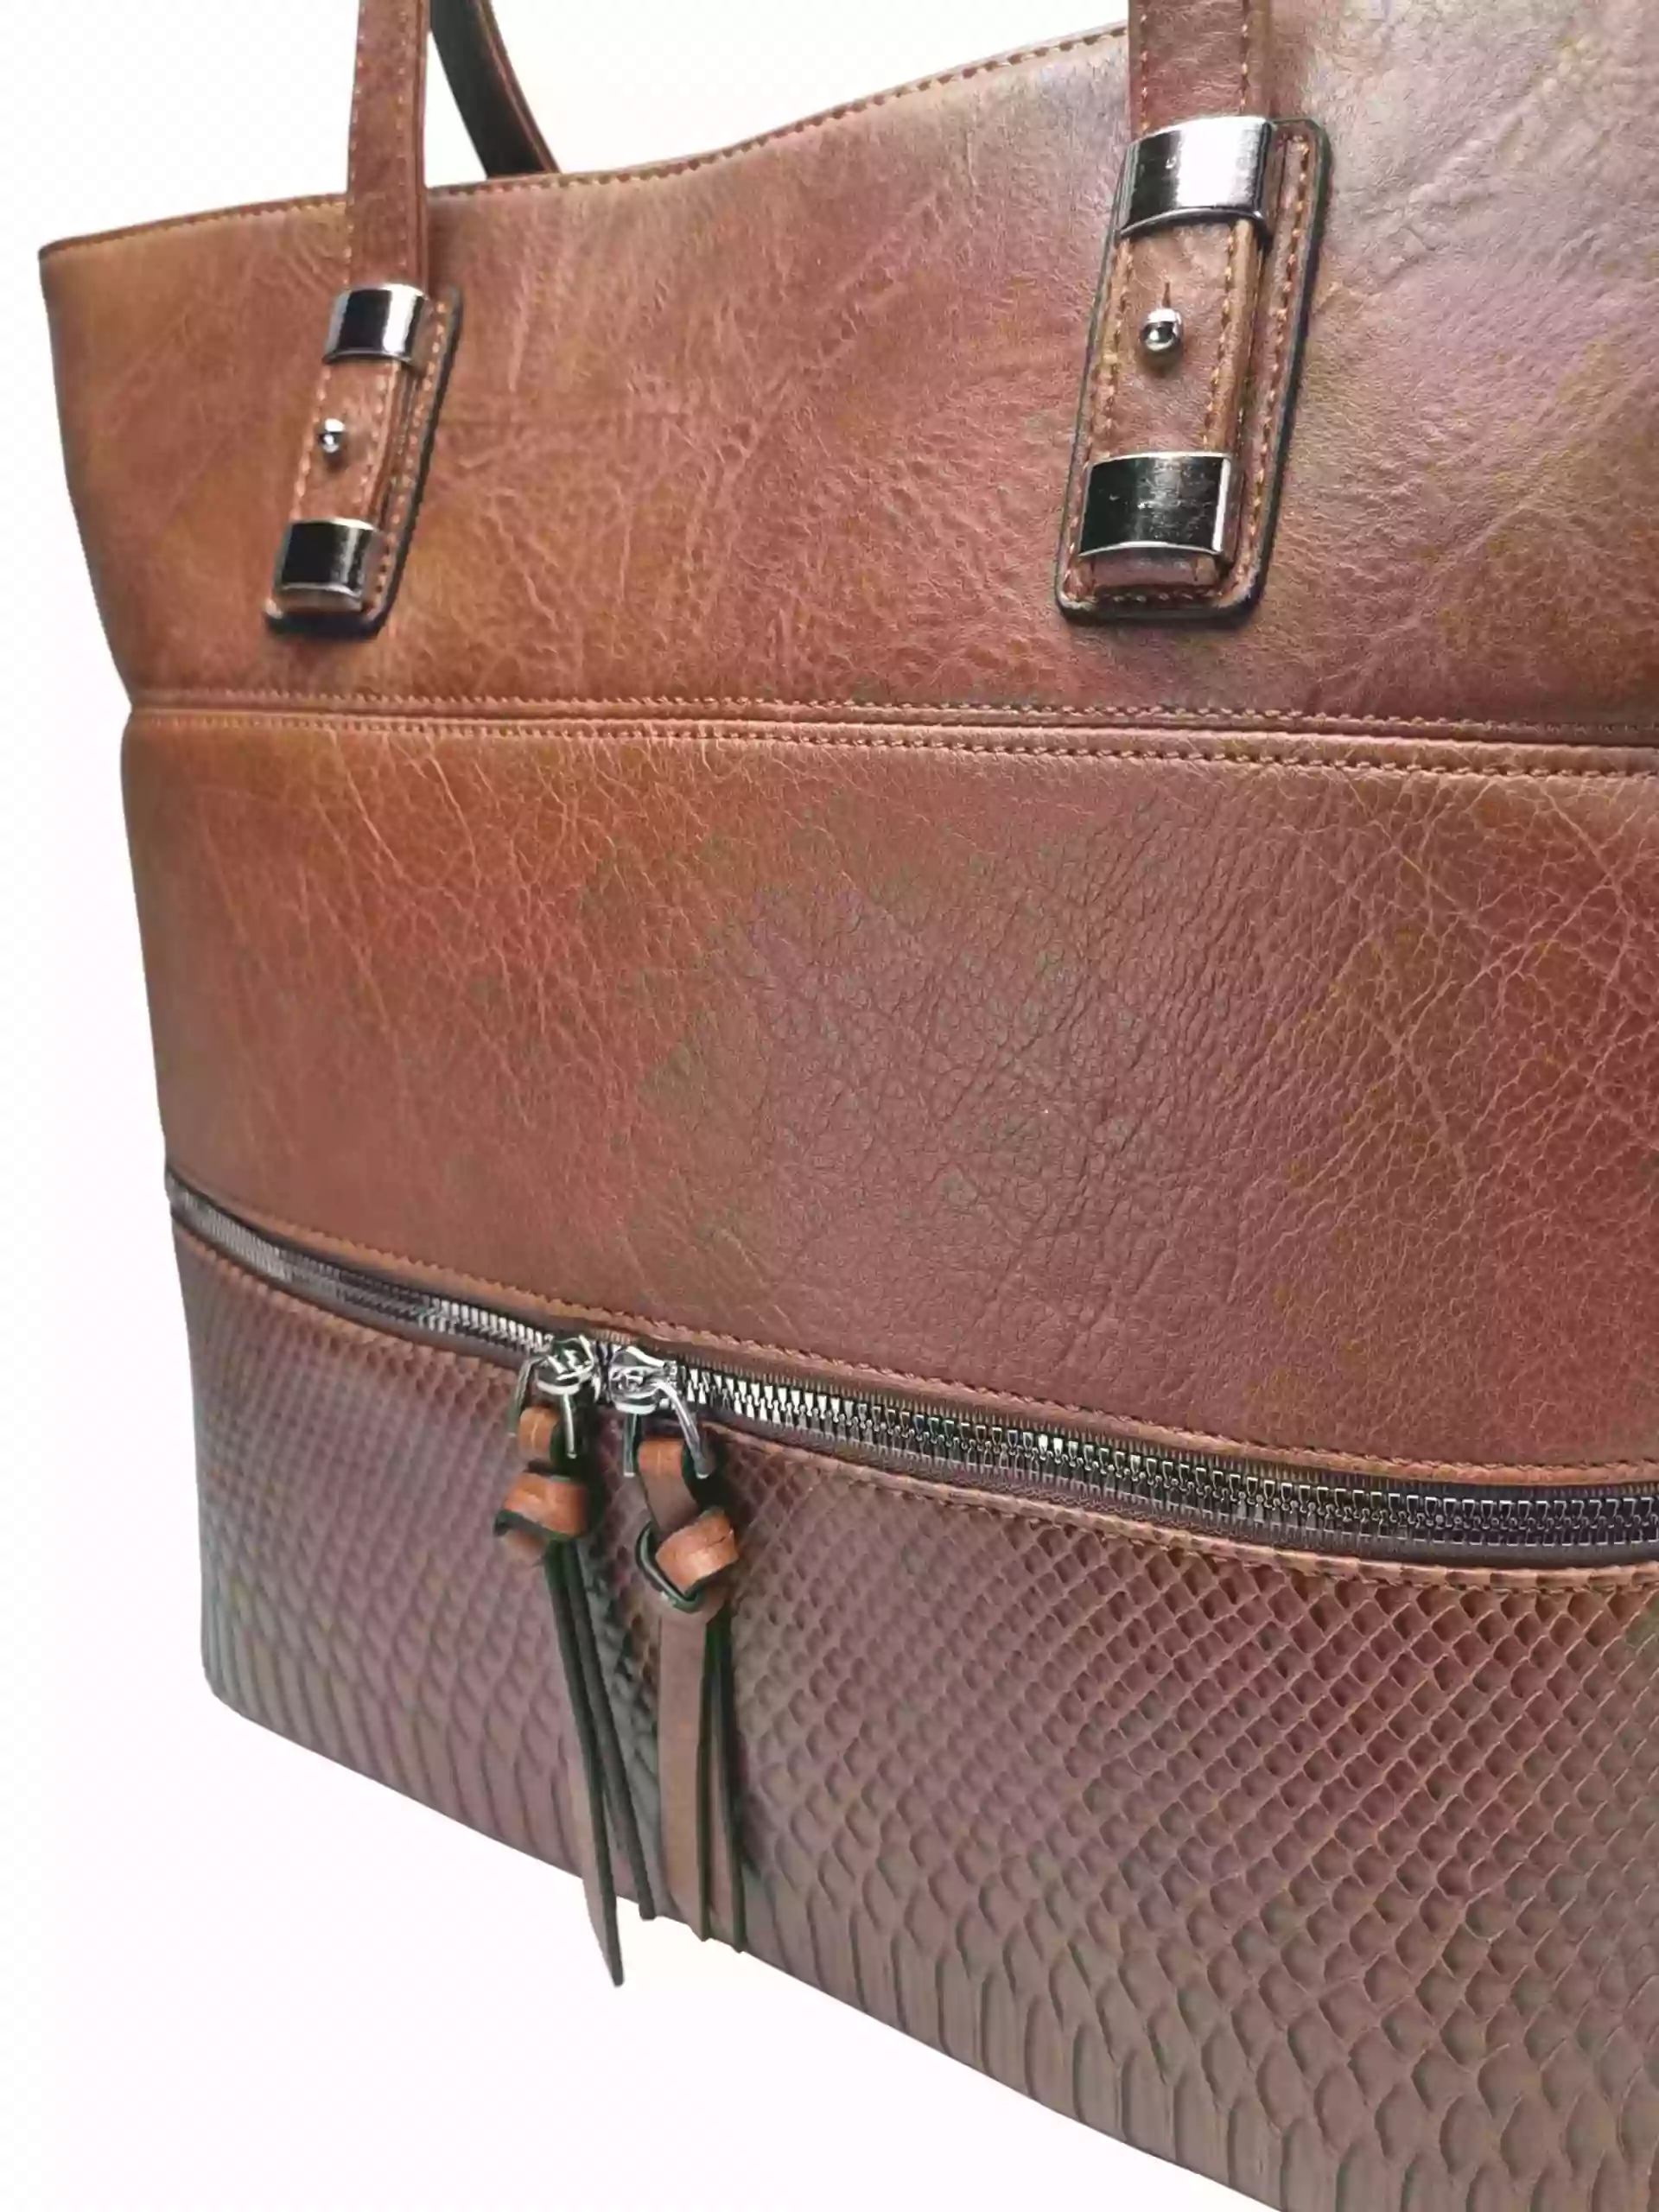 Středně hnědá kabelka přes rameno s kapsou, Tapple, H22091, detail kabelky